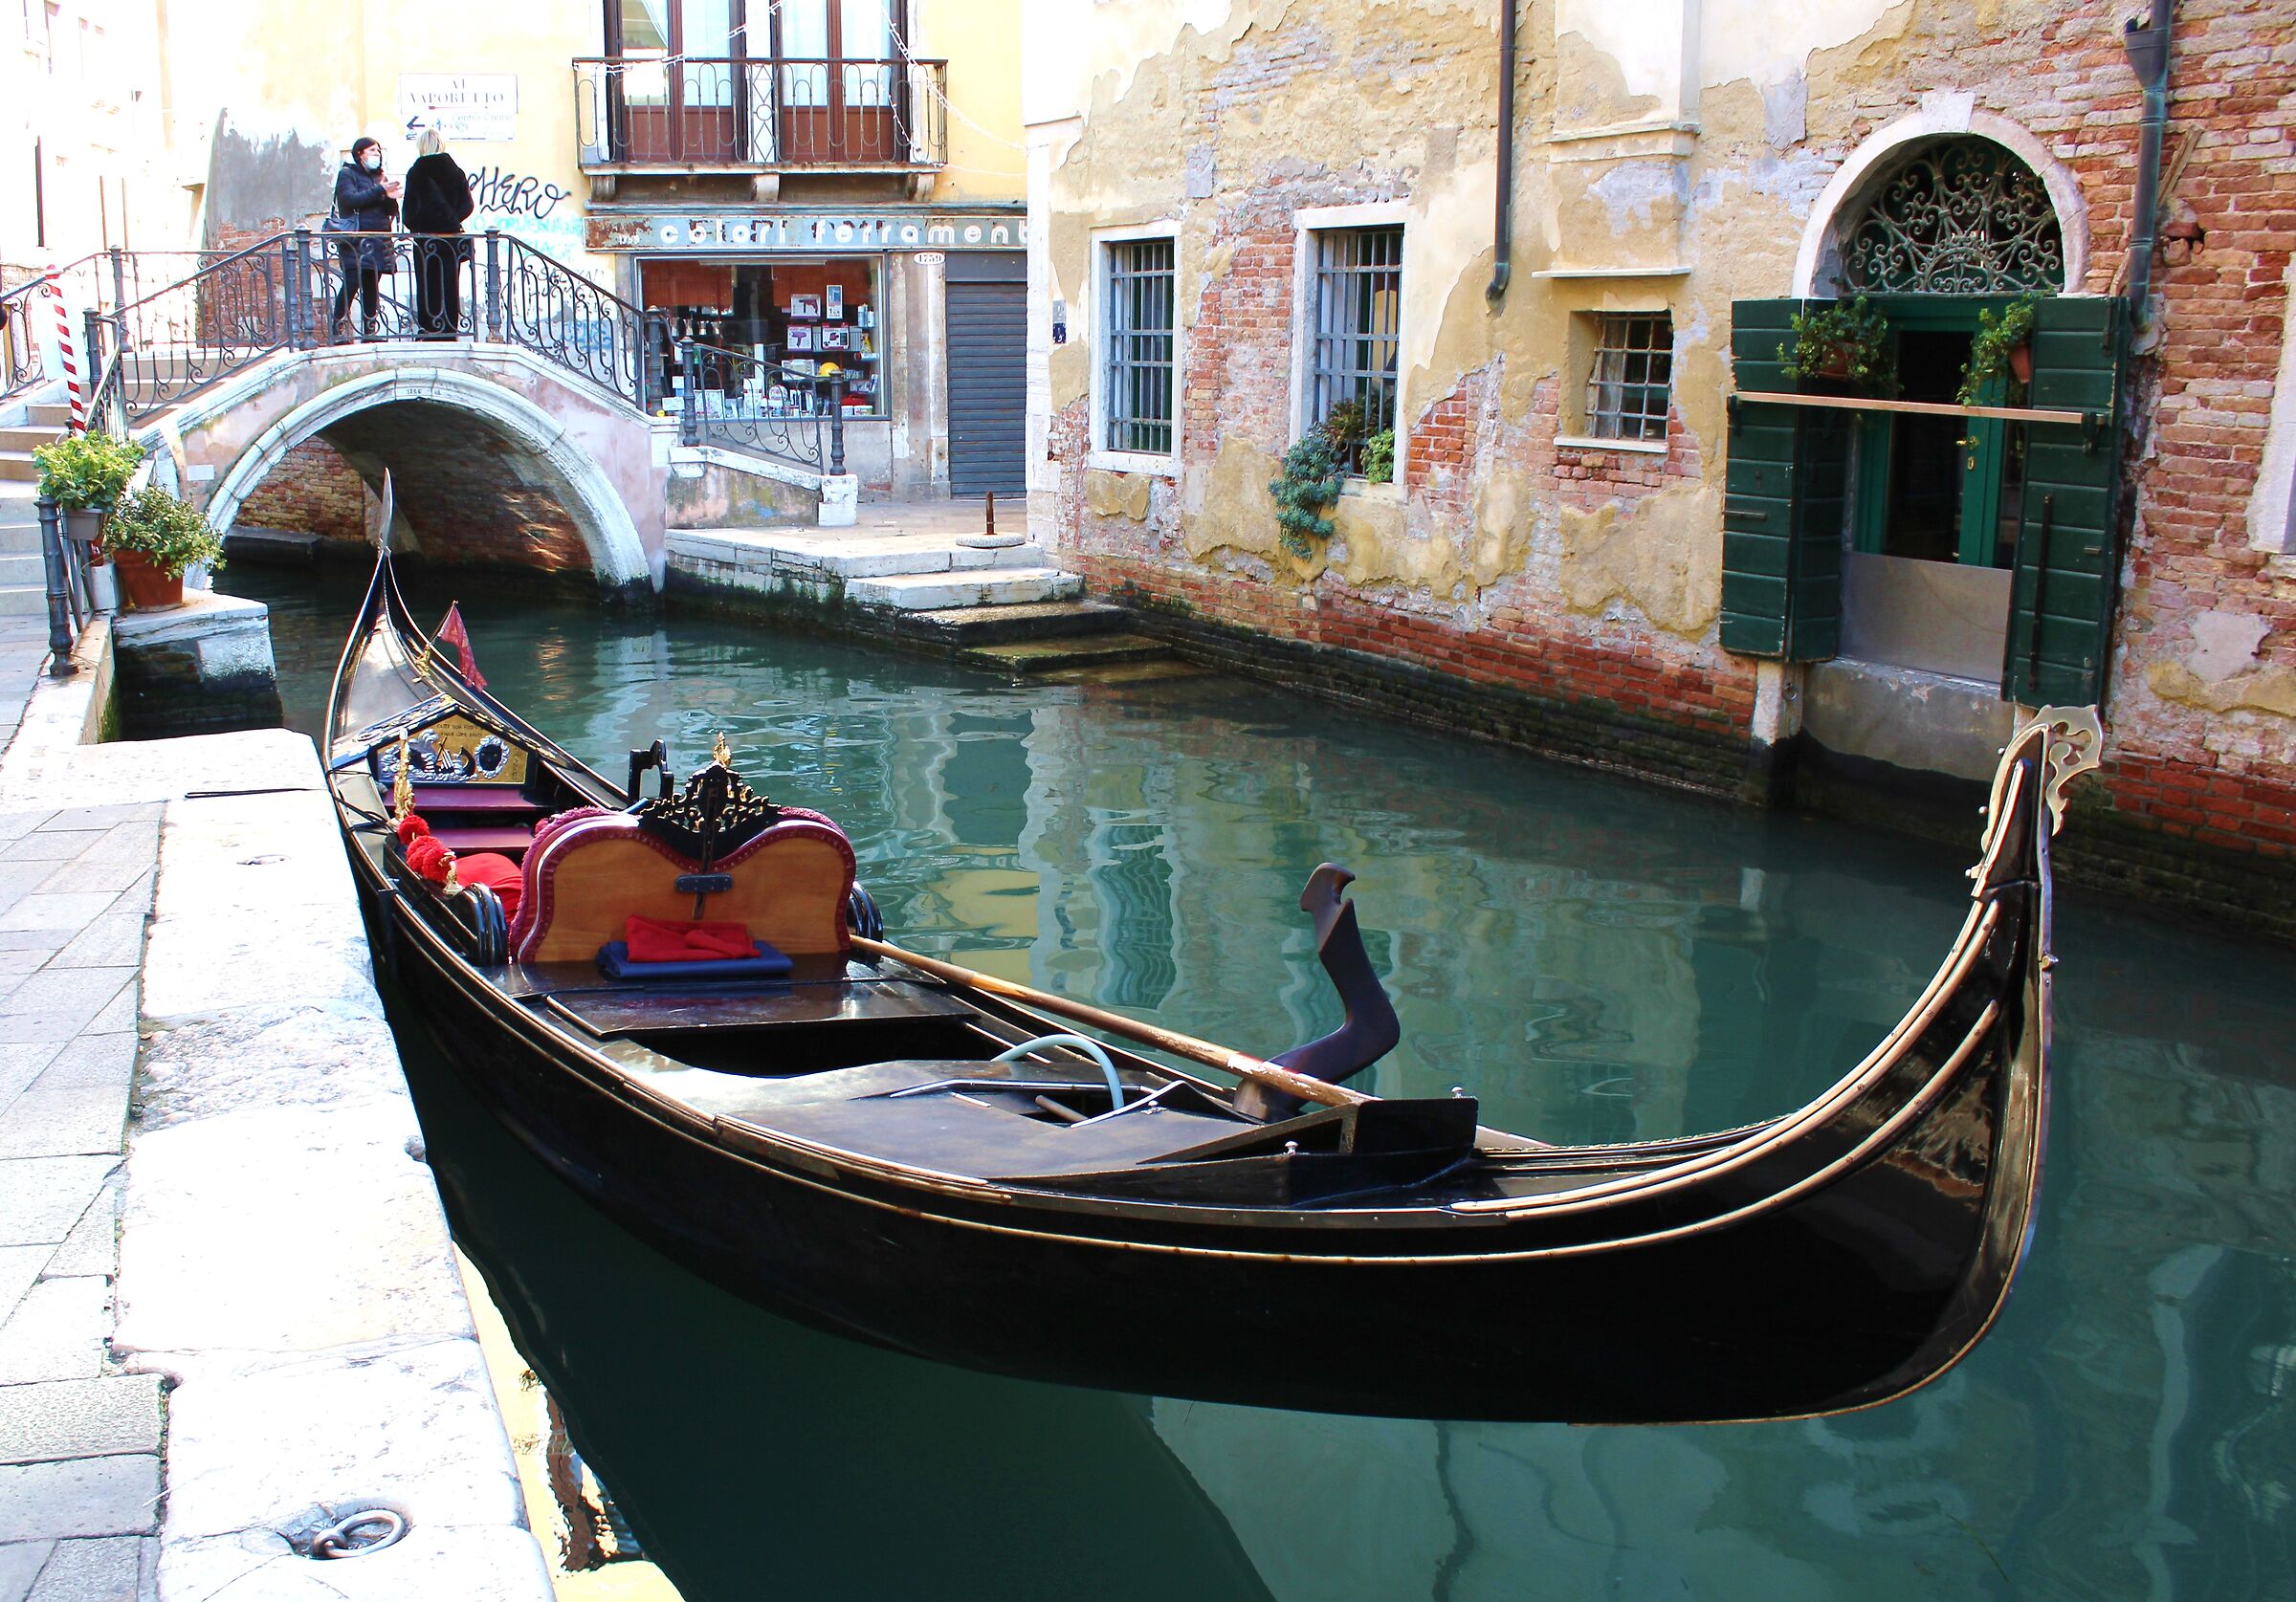 The gondola in Venice.. a classic....